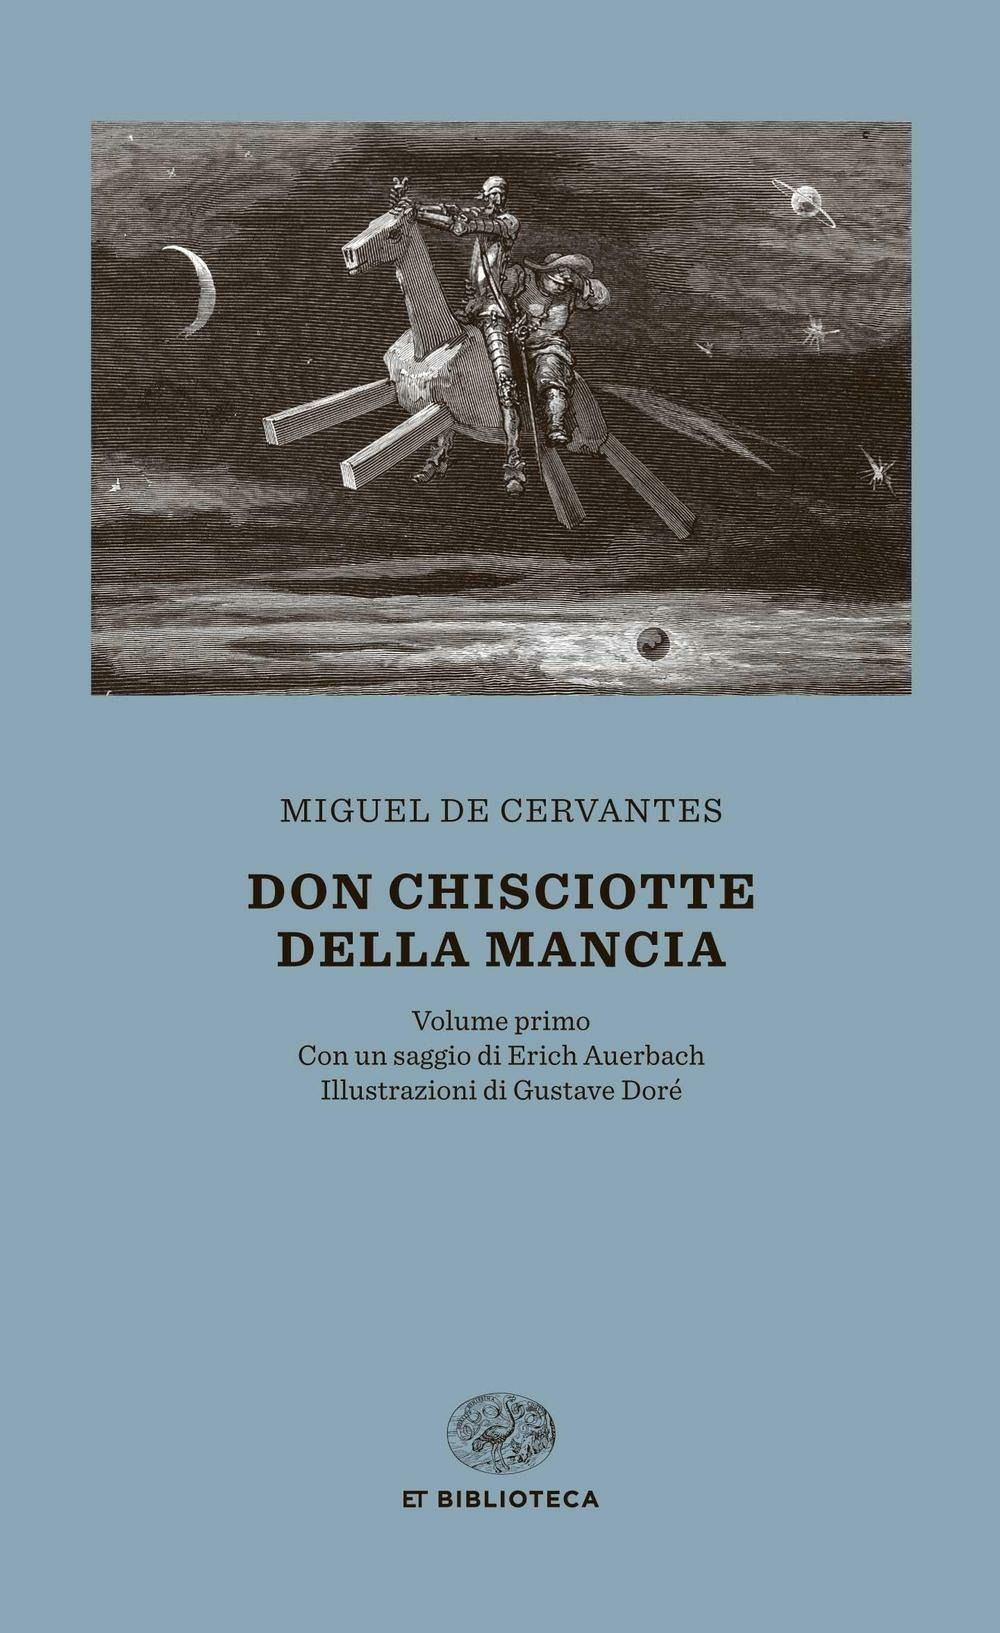 Don Chisciotte [Due volumi indivisibili] - Miguel de Cervantes - Einaudi